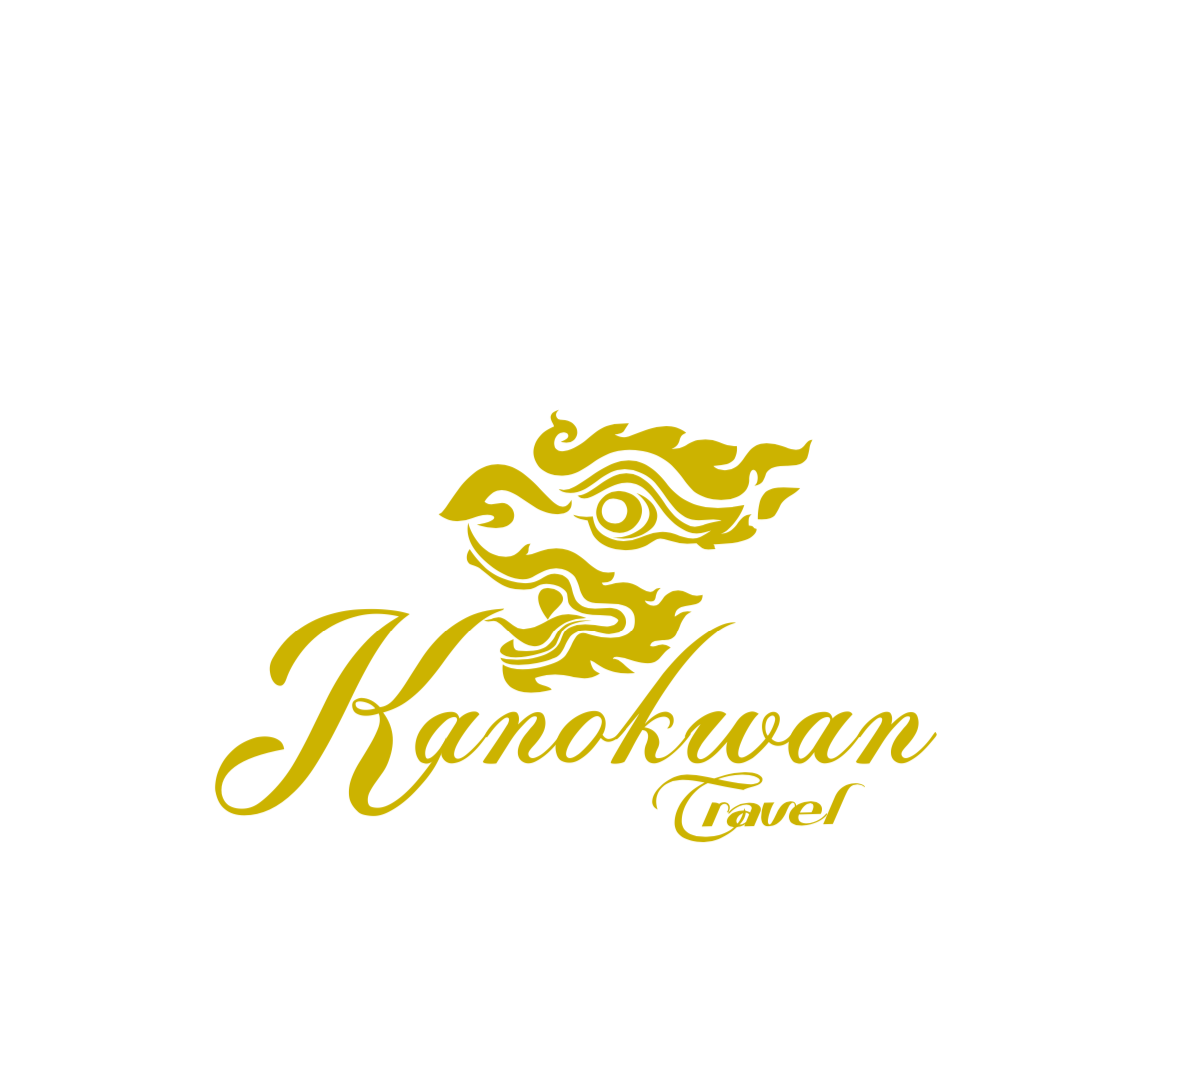 Kanokwan Travel logo